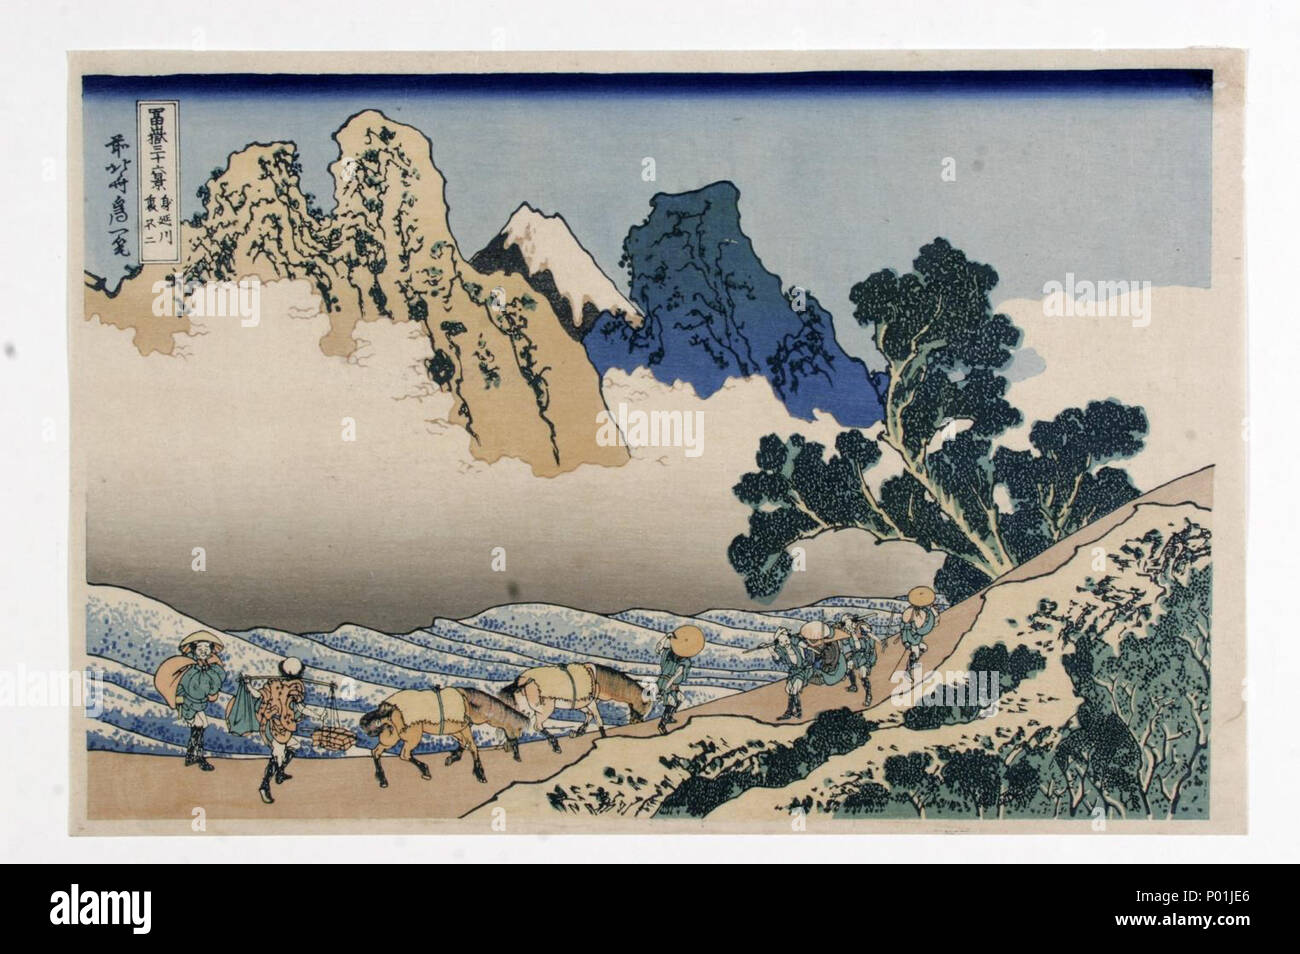 . Englisch: Katsushika Hokusai (1760-1849), zurück von Fuji Berg von Minobu River (1829-1833). Sammlung japanischer Drucke von Centre Céramique, Maastricht, Niederlande. 25. November 2014. Katsushika Hokusai (1760-1849) 12 Katsushika Hokusai (1760-1849), De achterkant van de Fuji vanaf de Minobu Rivier (1829-33) Stockfoto